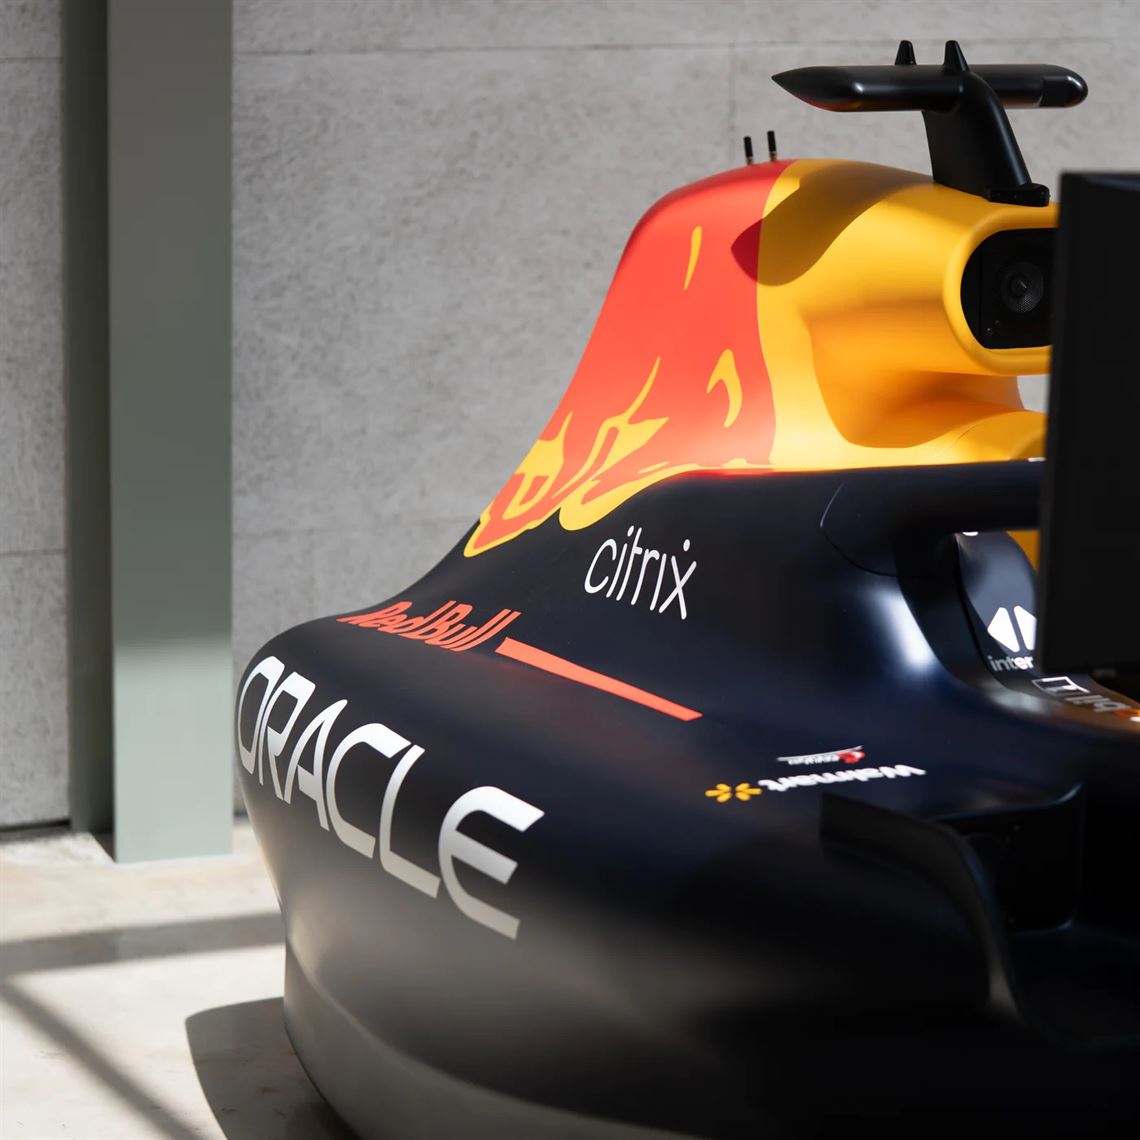 Un simulateur Red Bull F1 officiel chez vous ! - Superchicane